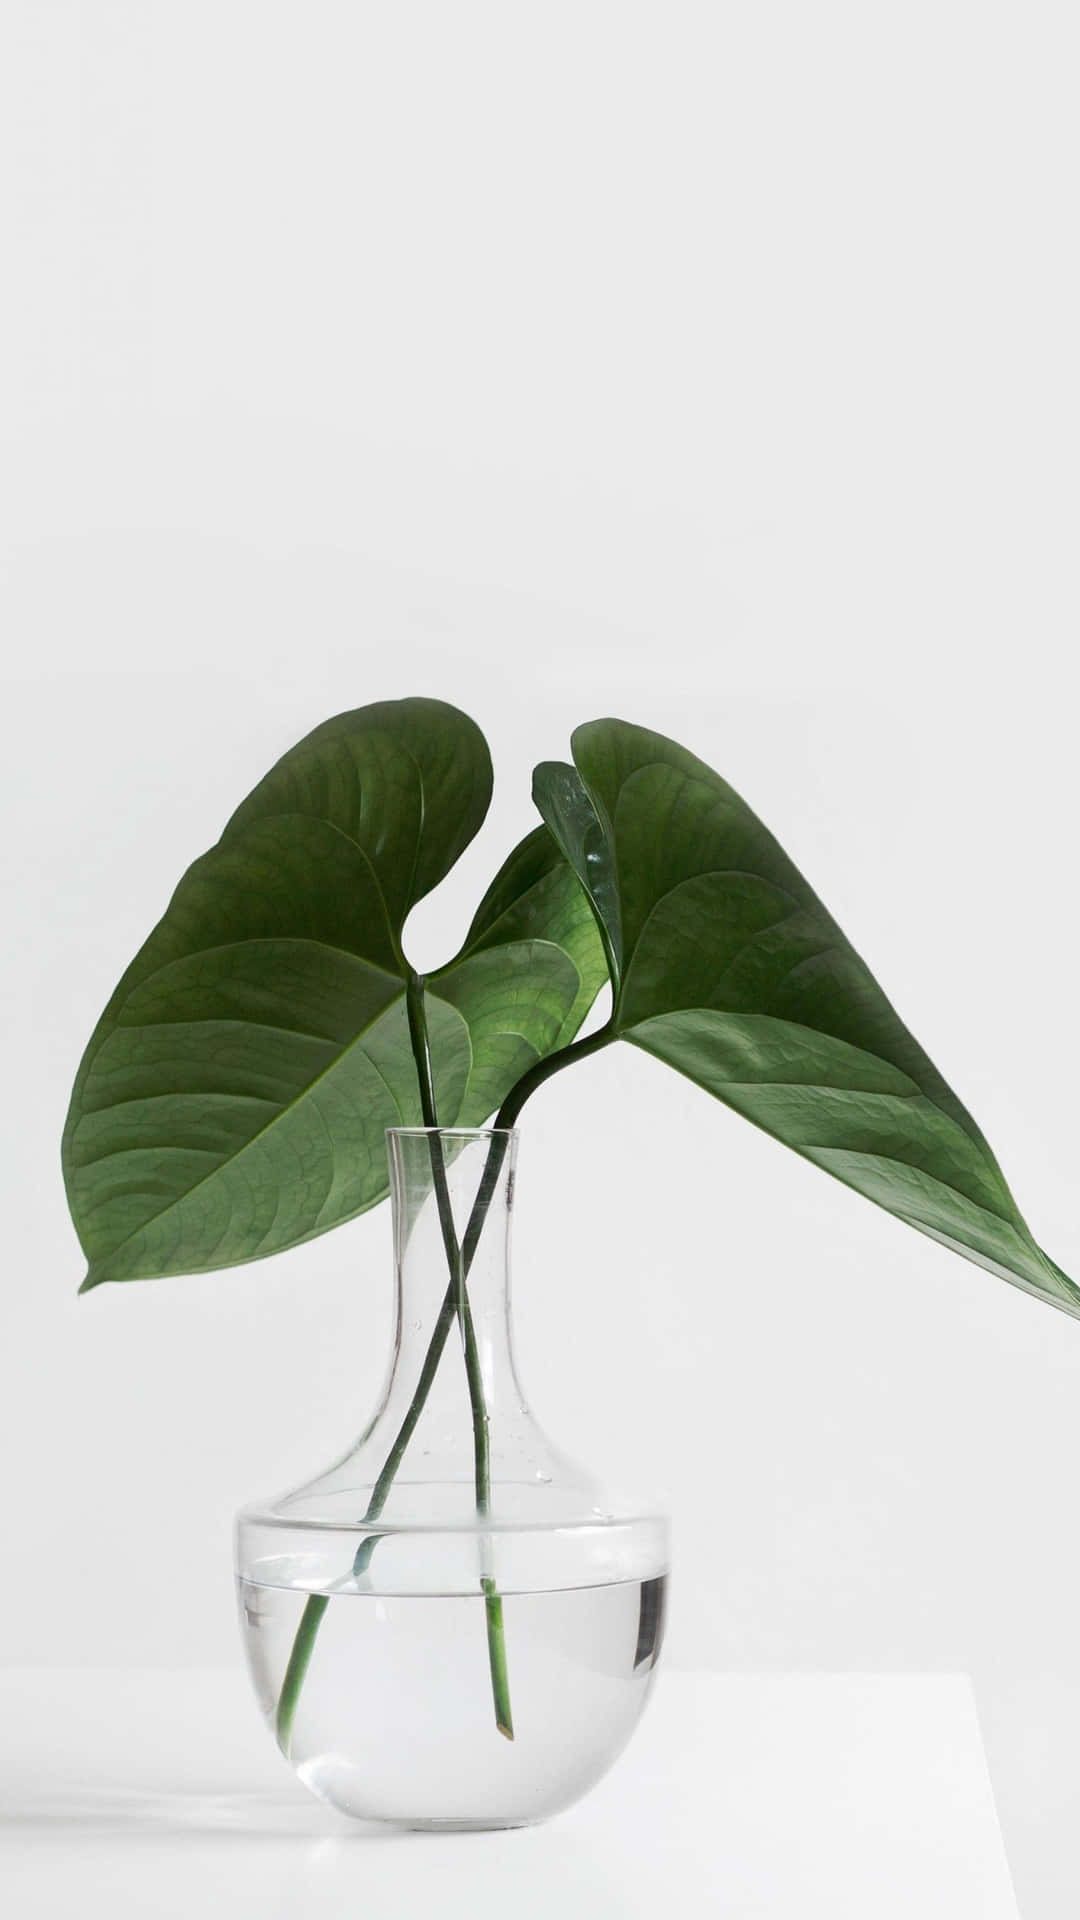 Green Plant Aesthetic Vase Wallpaper